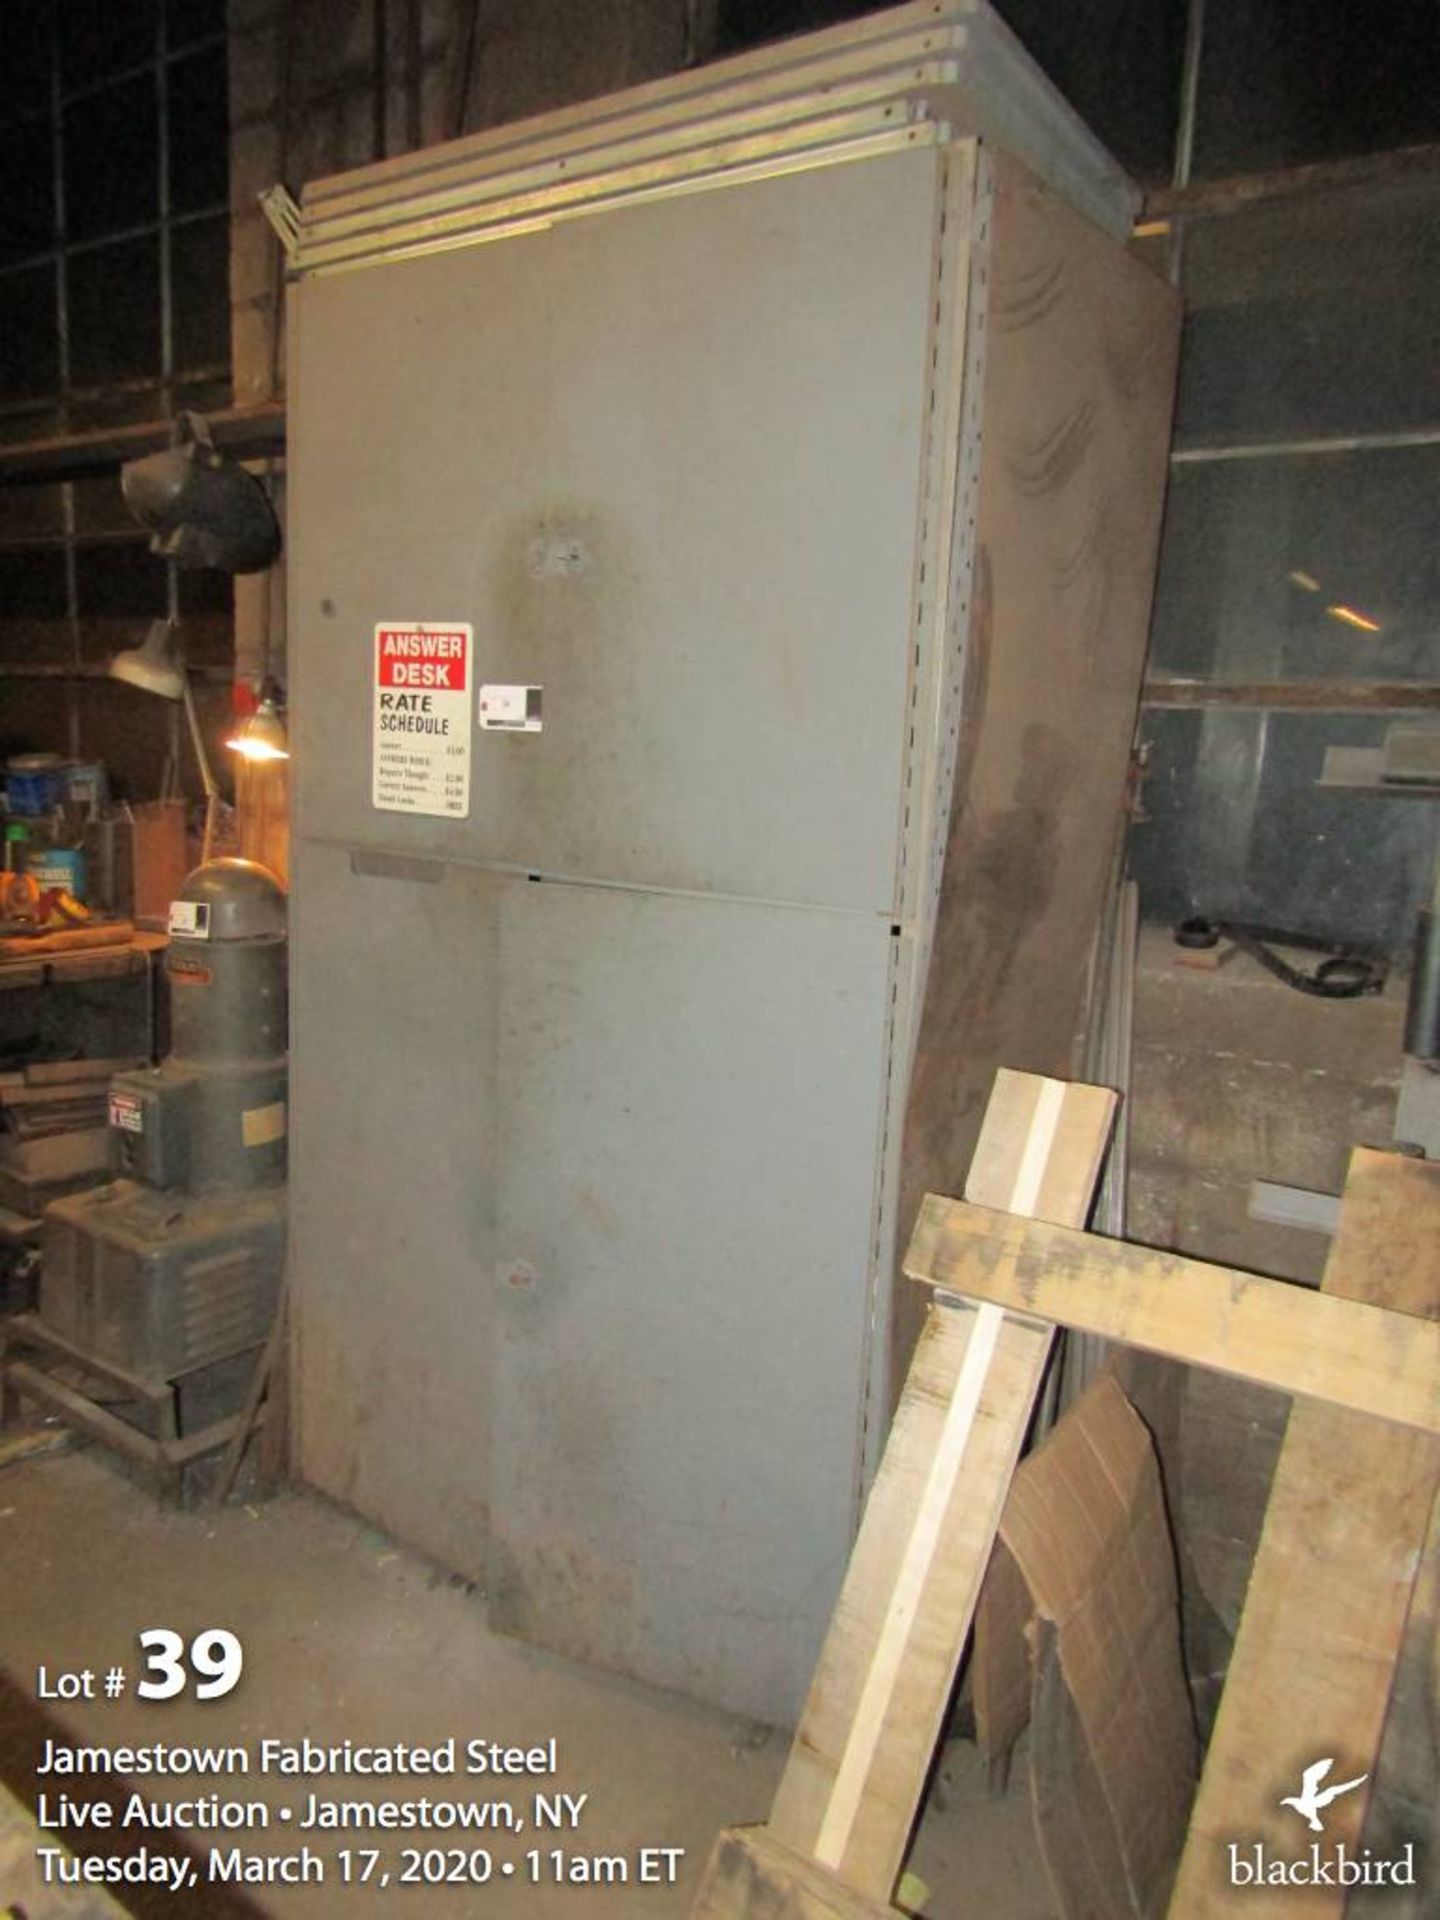 4 door welding supply cabinet w/ contents